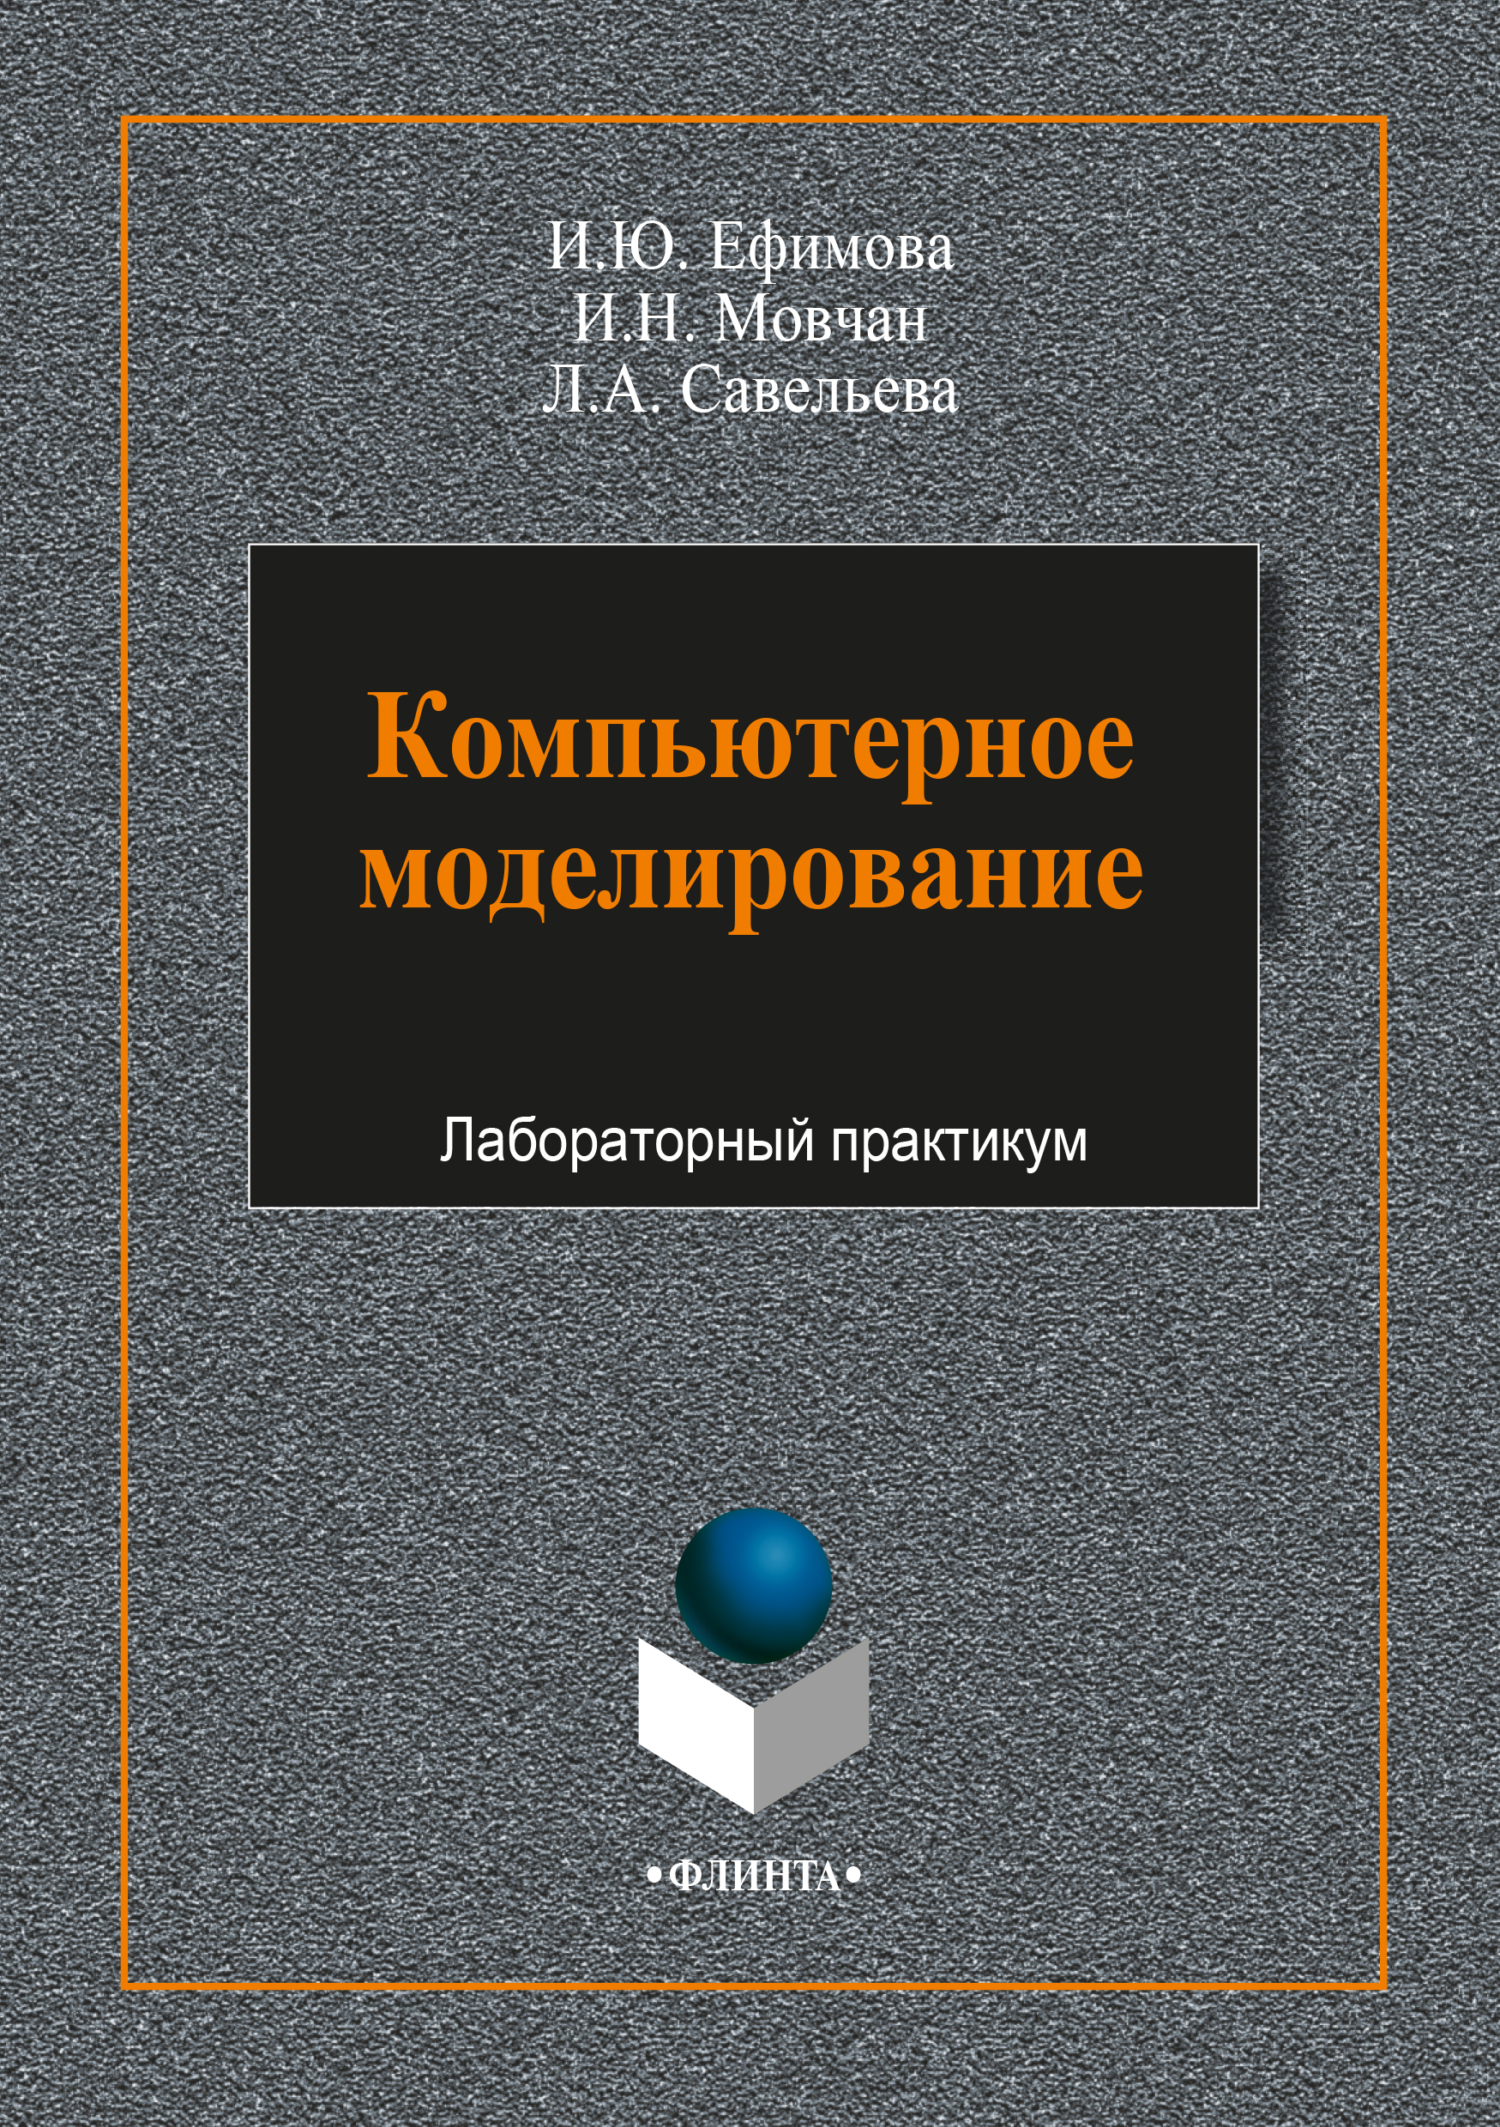 Книга  Компьютерное моделирование созданная Л. А. Савельева, И. Ю. Ефимова, И. Н. Мовчан может относится к жанру практикумы, программы. Стоимость электронной книги Компьютерное моделирование с идентификатором 64926726 составляет 70.00 руб.